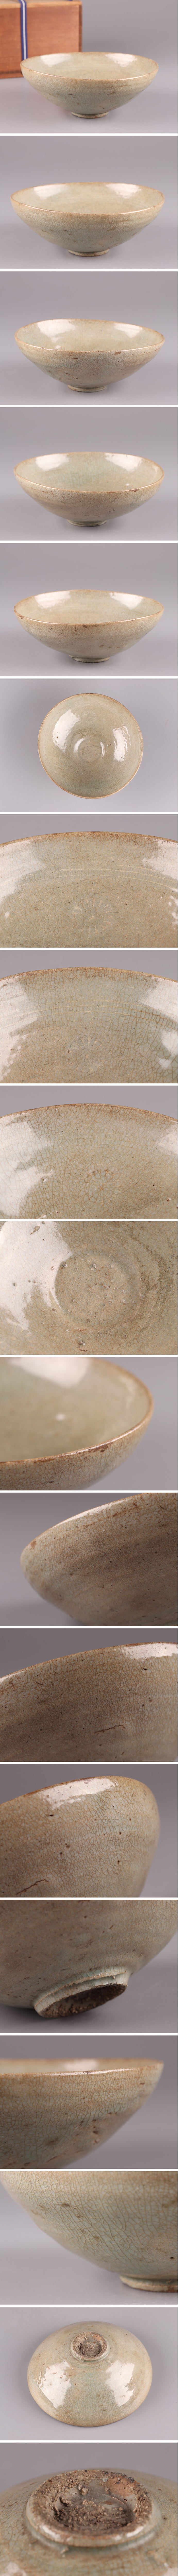 在庫国産古美術 朝鮮古陶磁器 高麗青磁 茶碗 時代物 極上品 初だし品 3658 高麗